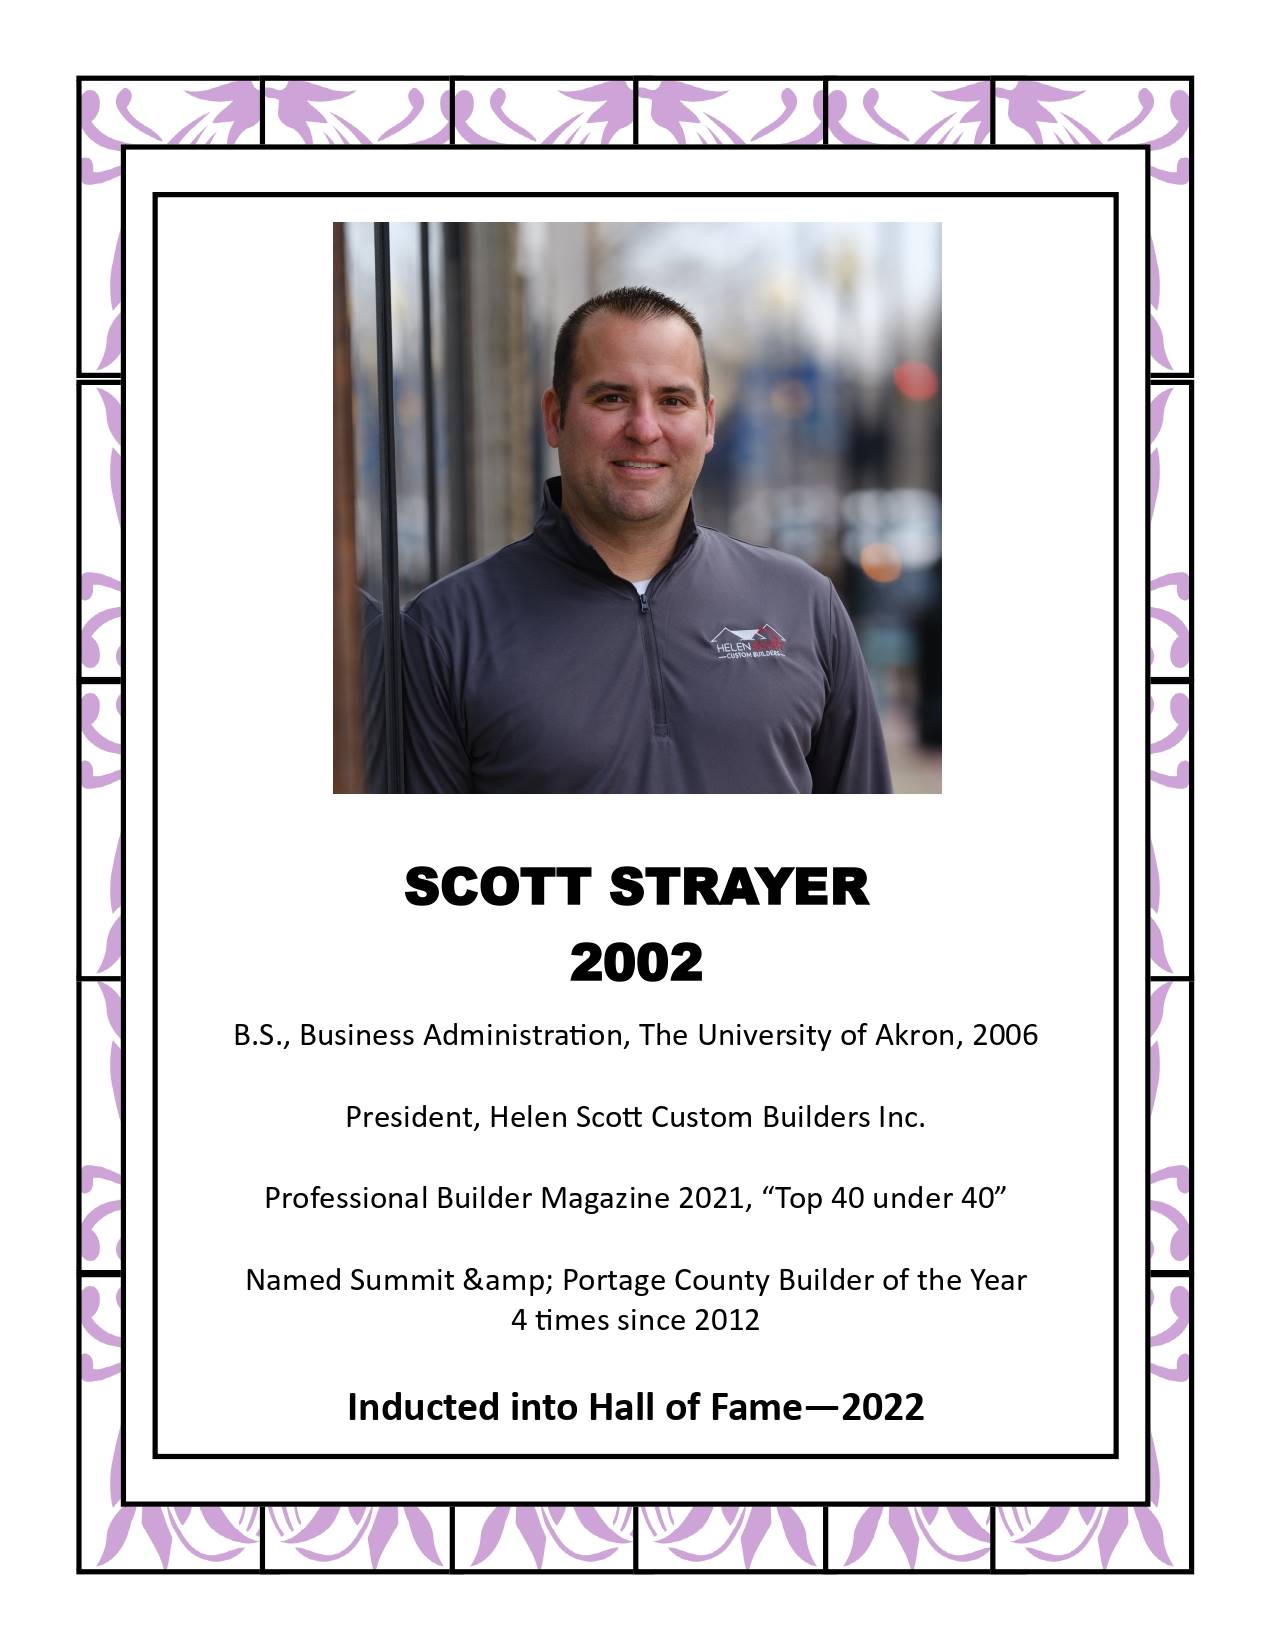 Scott Strayer